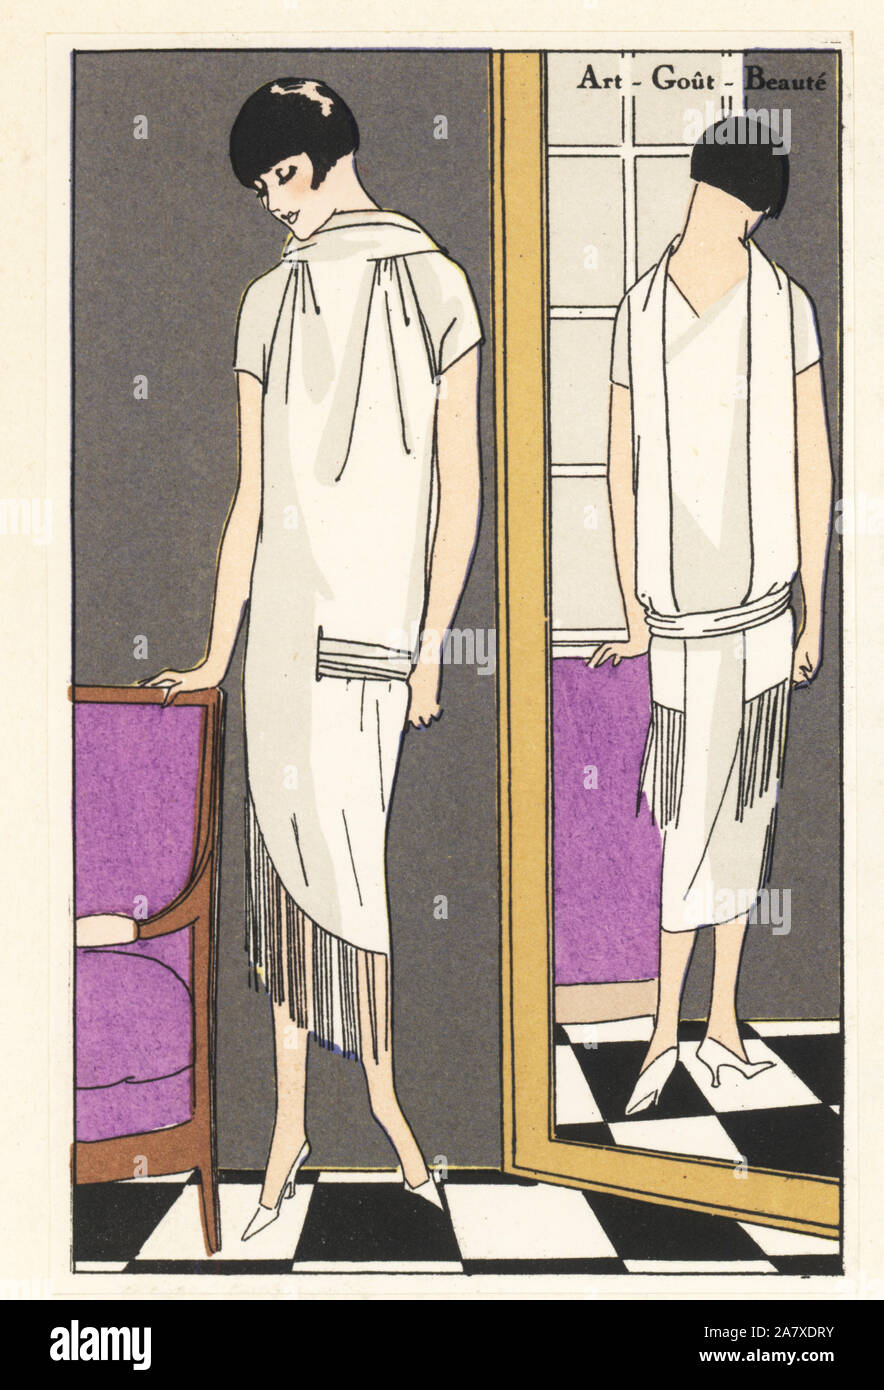 La donna in piedi davanti ad uno specchio in pomeriggio abito di seta bianca serge con frangia. Pochoir Handcolored (stencil) litografia dal lusso francese rivista di moda arte, gotta, Beaute, 1925. Foto Stock